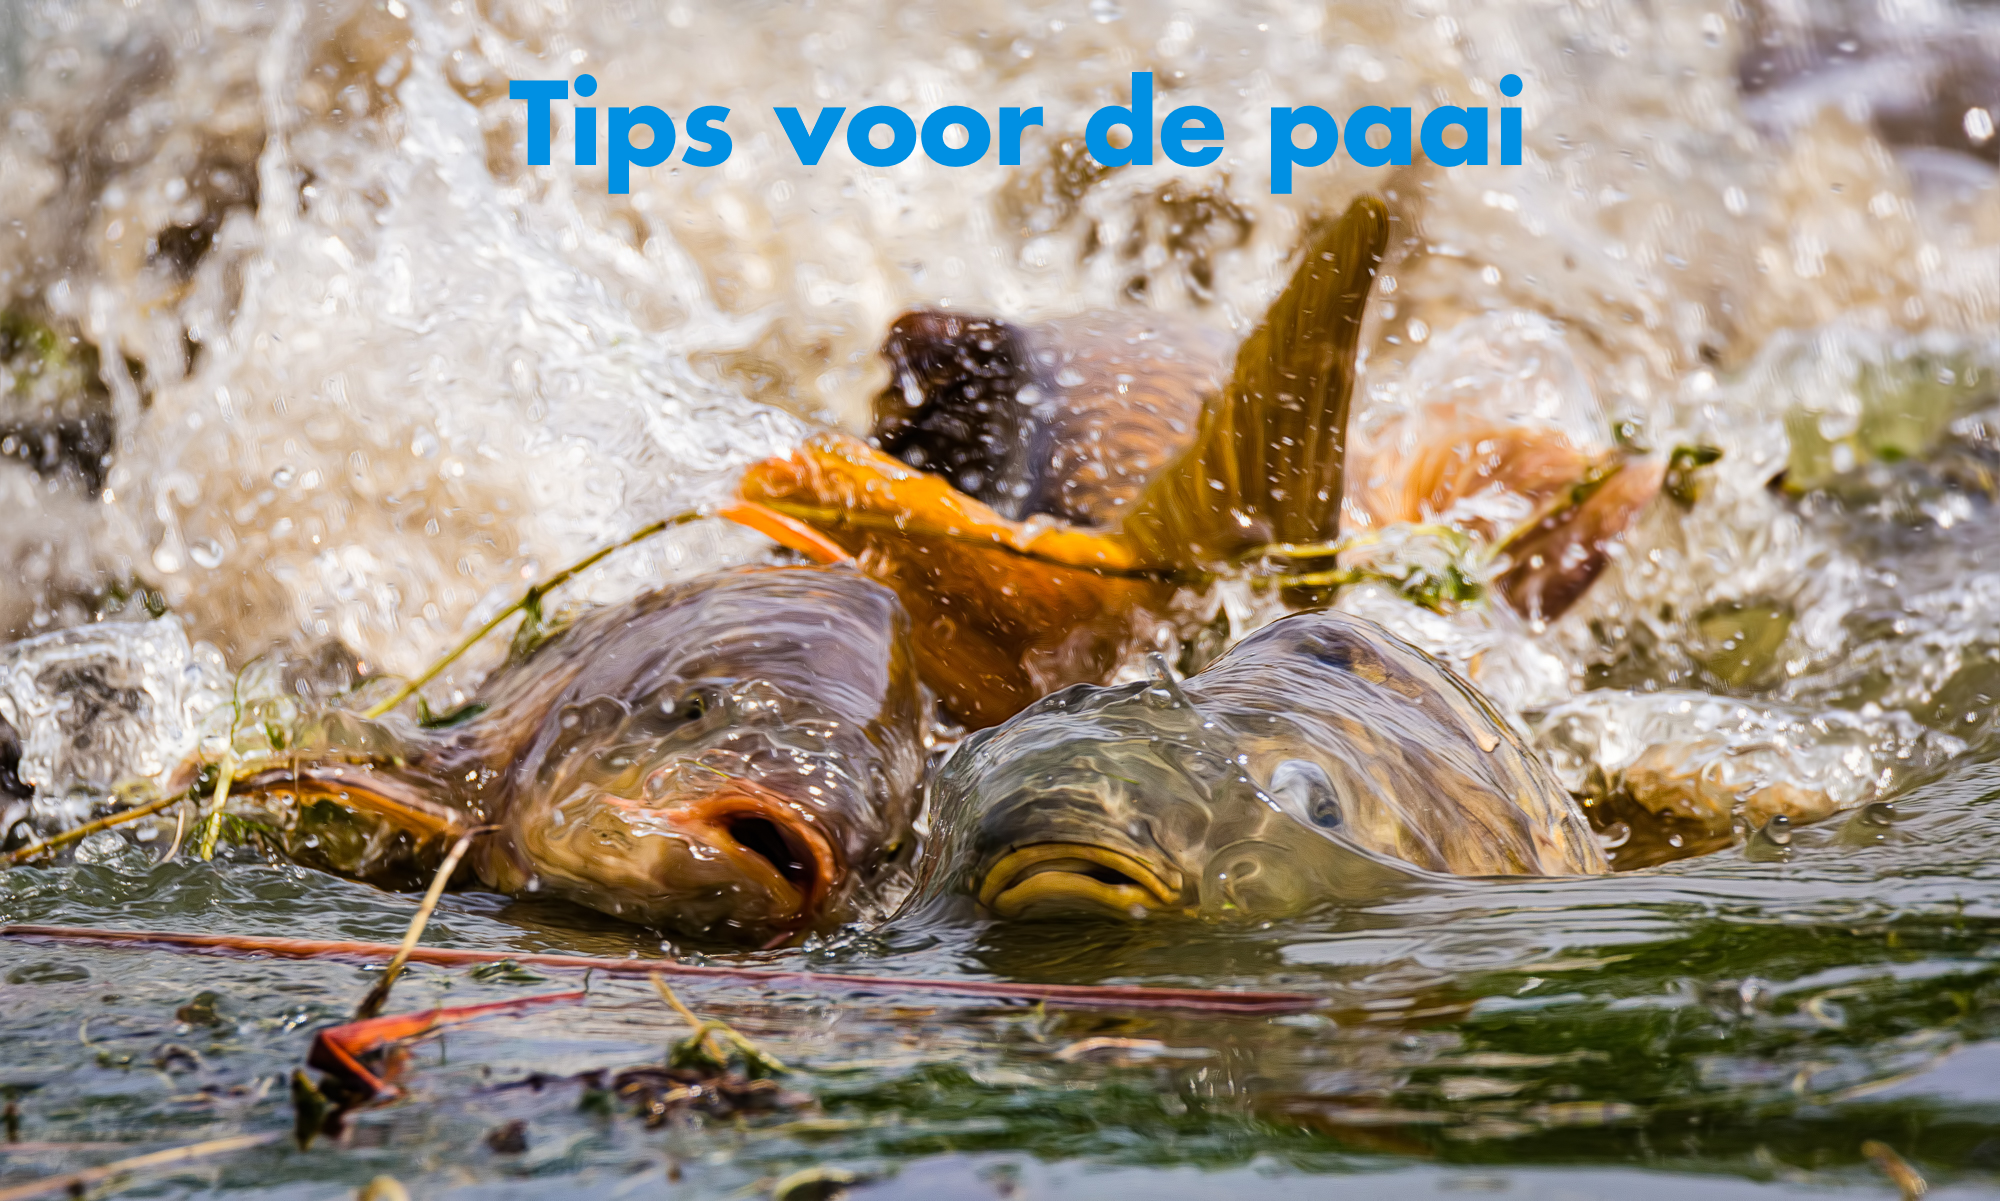 Hoe kun je karper vangen tijdens de paai? 4 top tips om meer te vangen rond de paai!